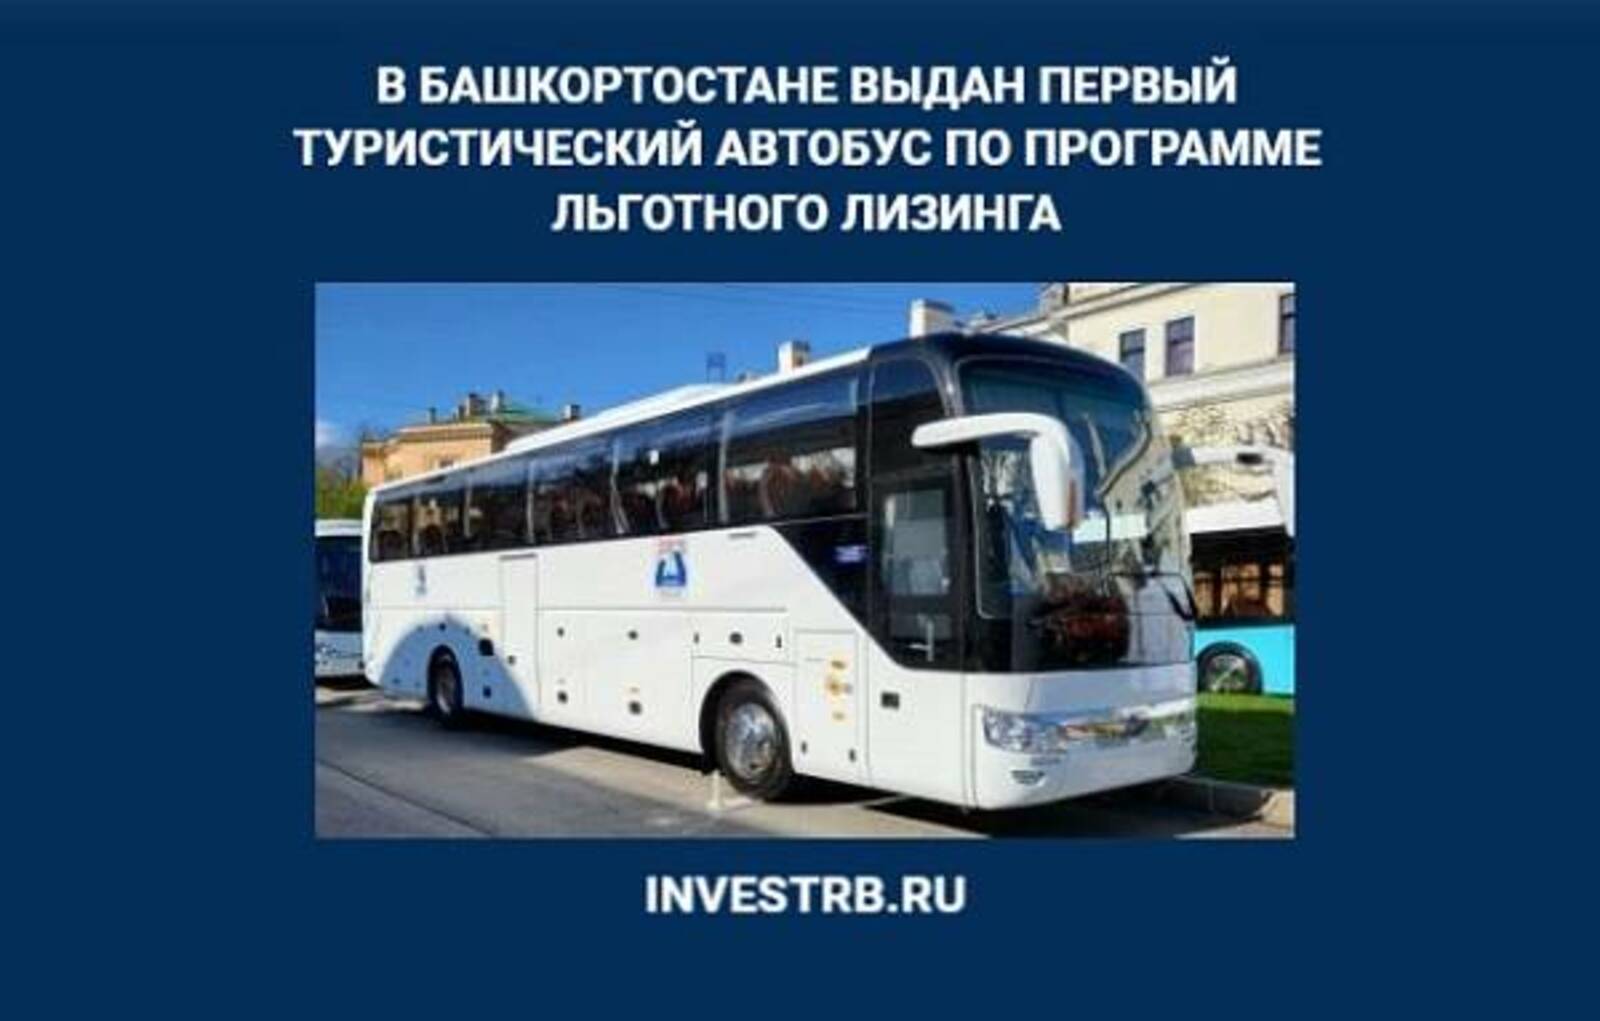 В Башкортостане выдан первый туристический автобус по программе льготного лизинга